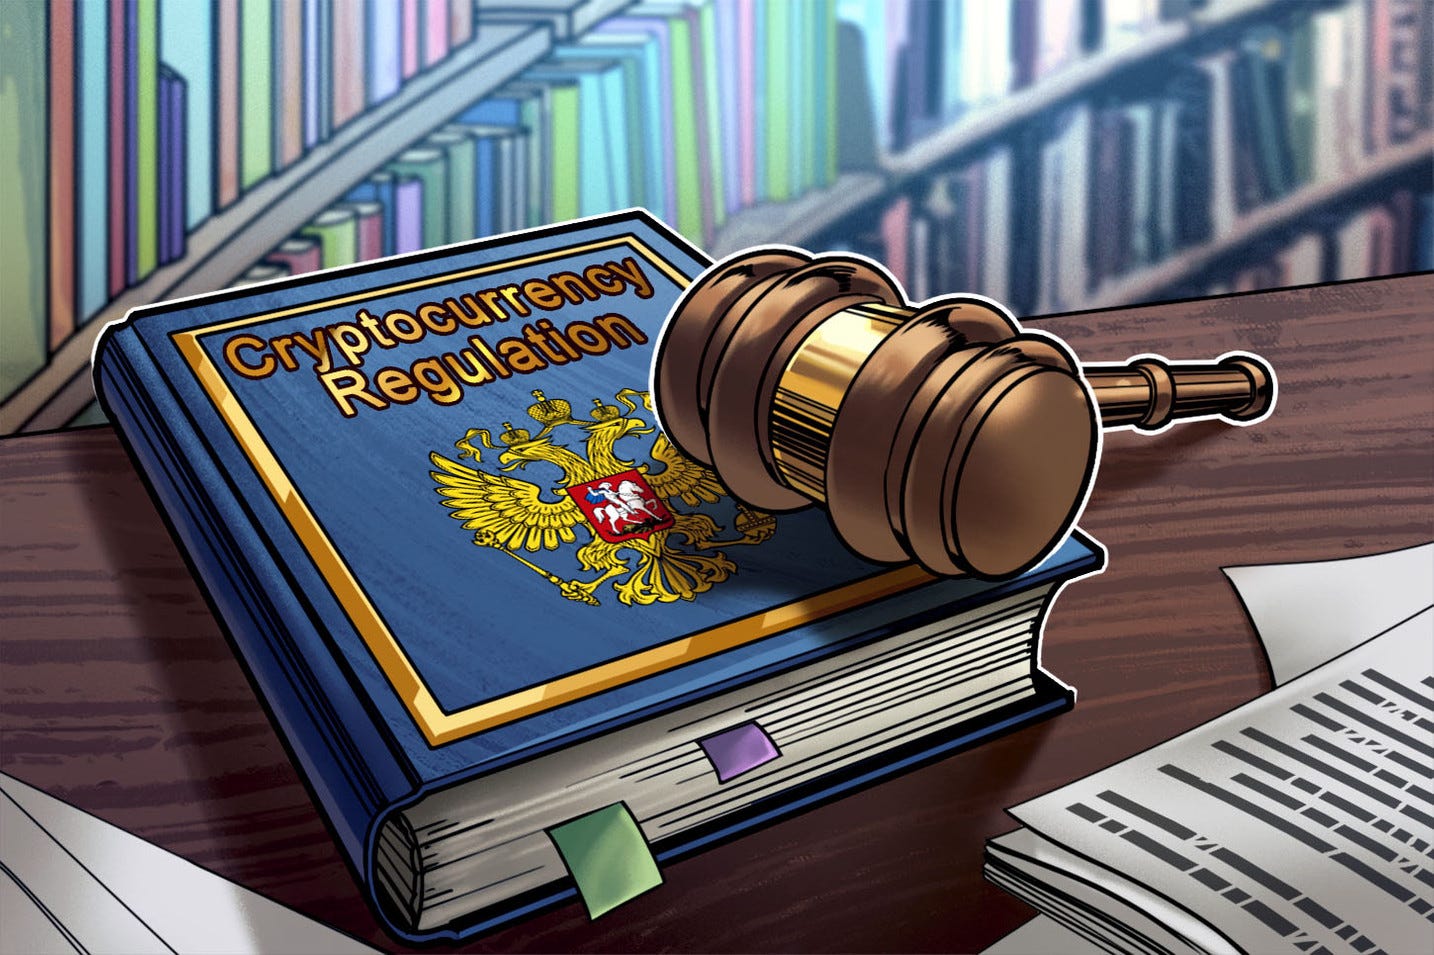 Crypto Twitter reage à medida que o governo russo recomenda o uso de criptomoedas como moeda legal